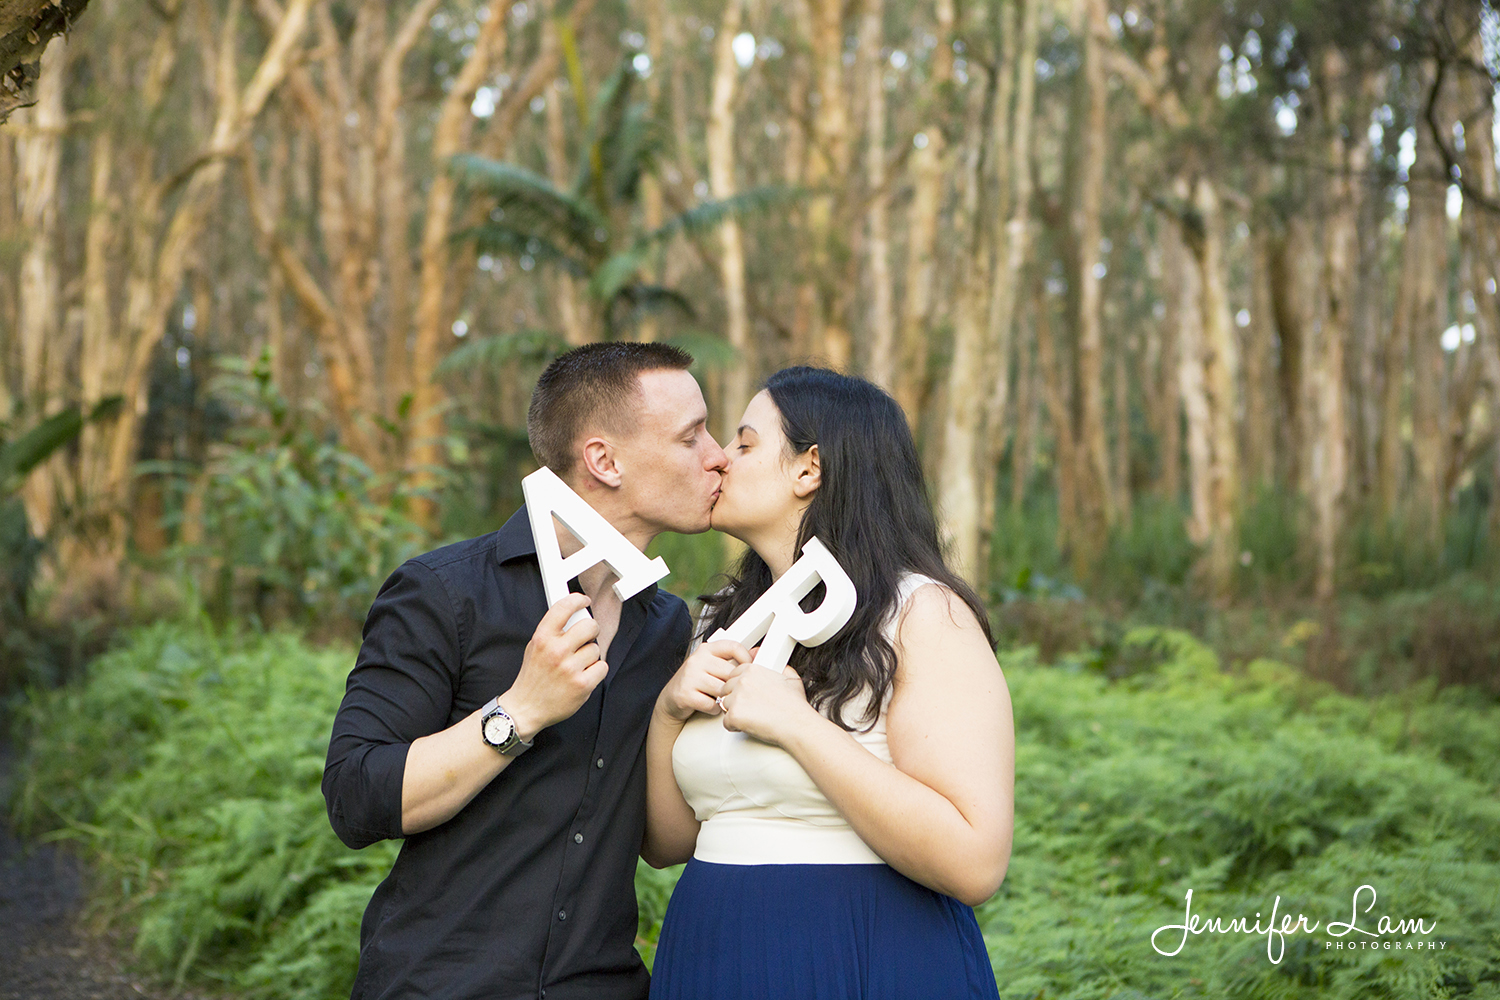 Engagement Session - Sydney Wedding Photographer - Jennifer Lam Photography (17).jpg